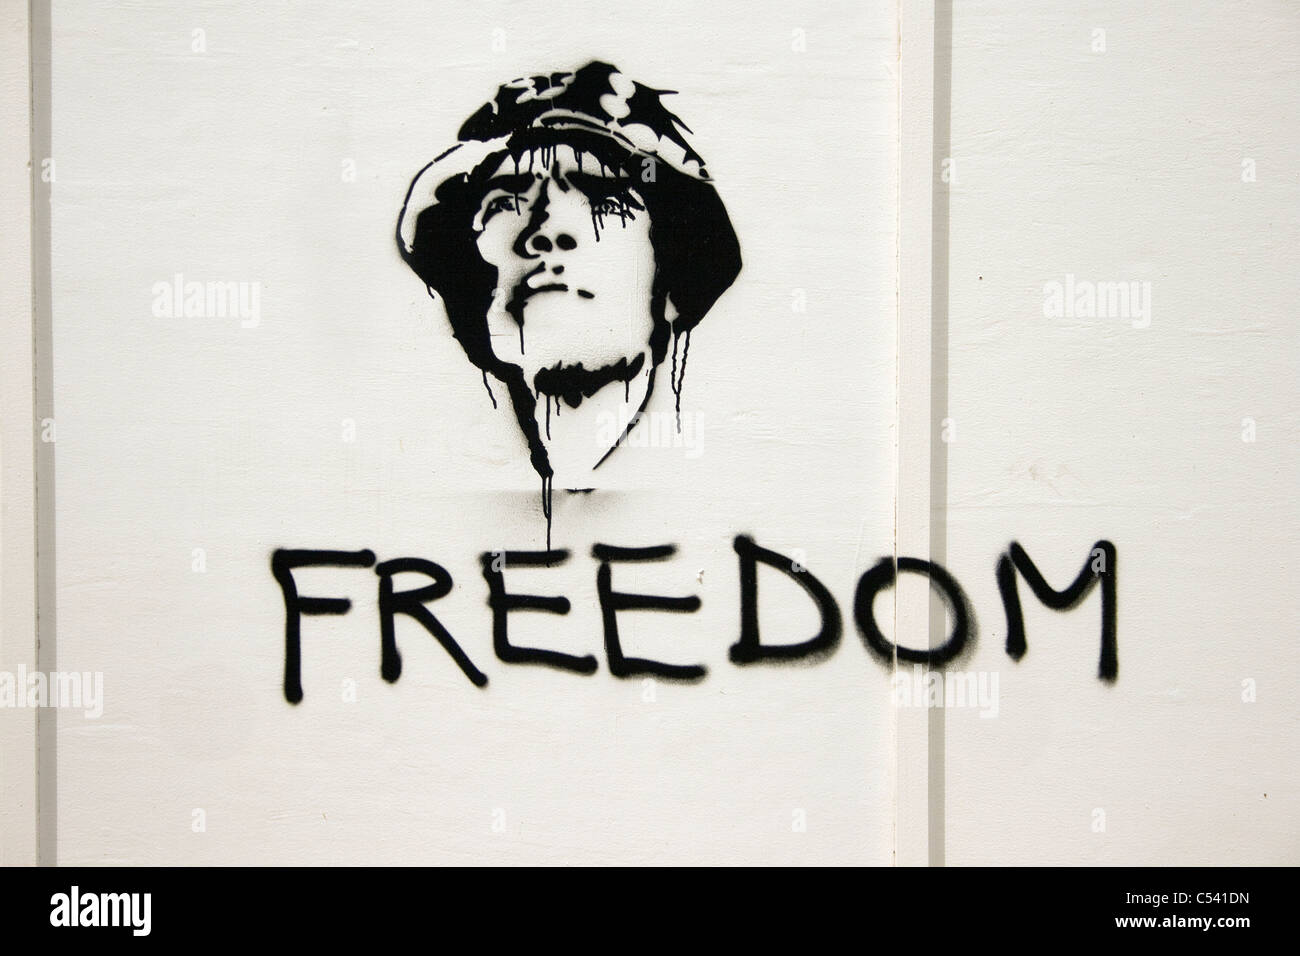 FREEDOM: Graffiti spray stencil portrait of peace campaigner Brian Haw in a Che Guevara style image Stock Photo